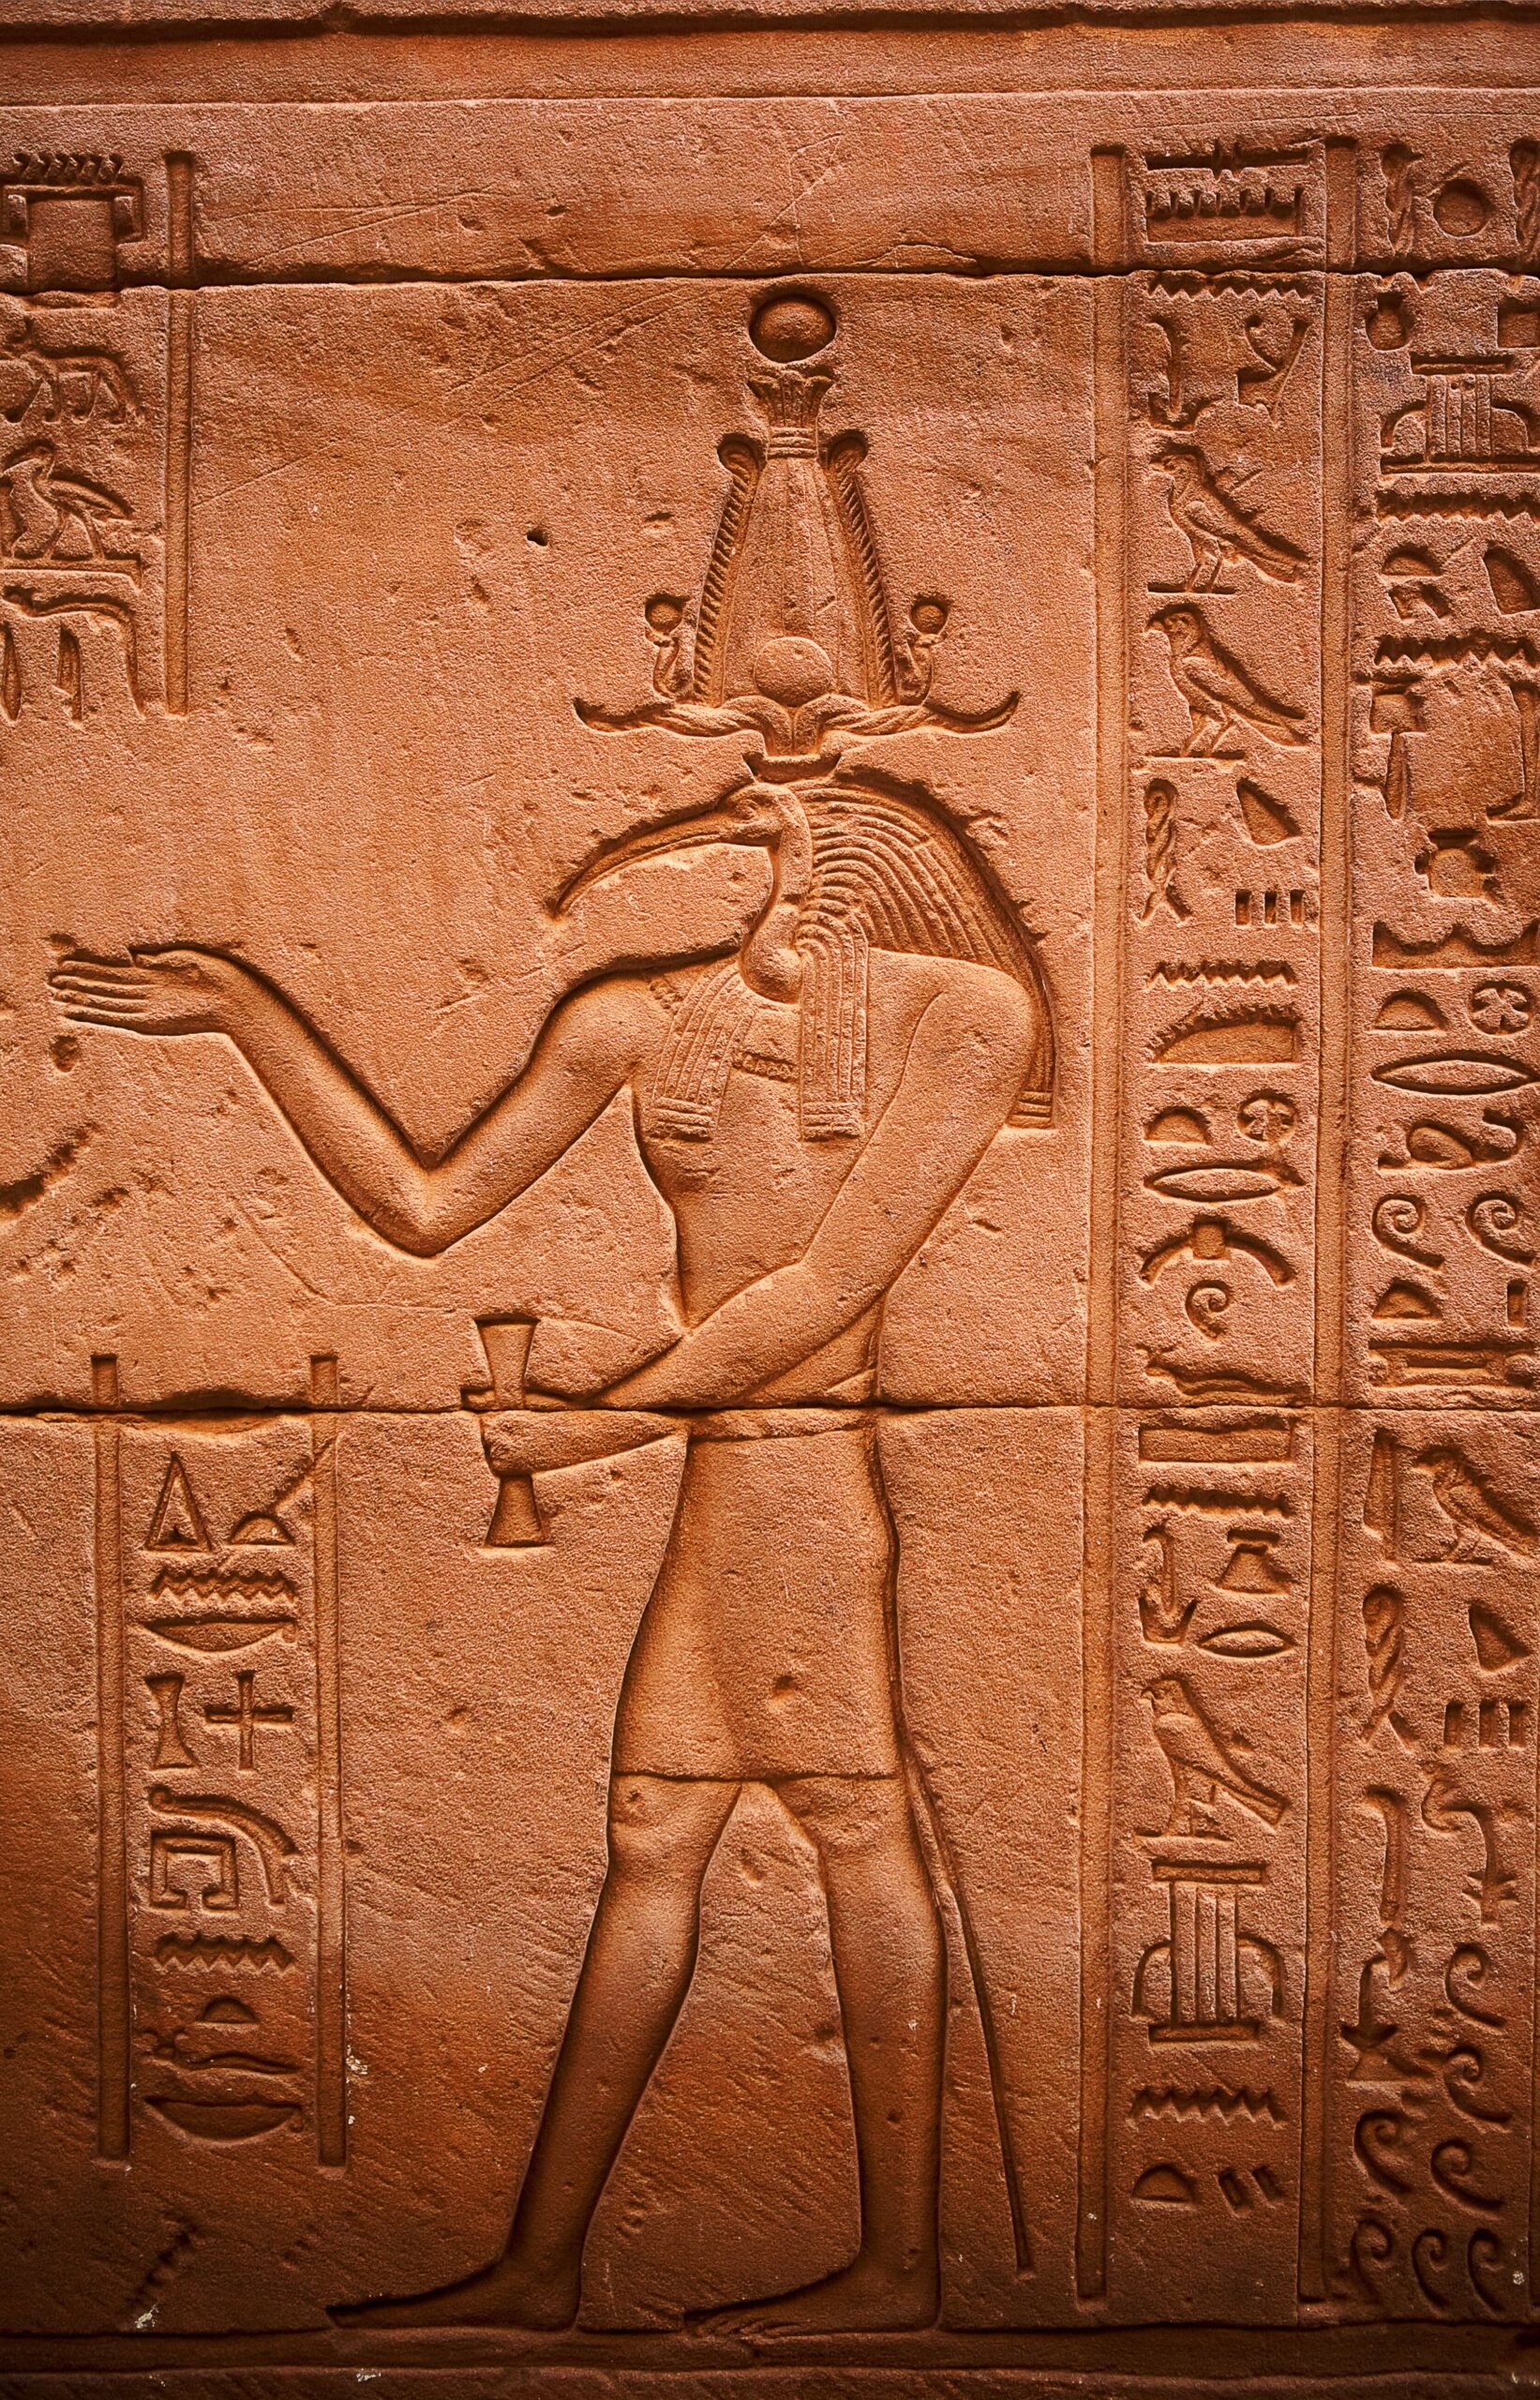 kybalion-sello-simbolo-autor-thoth-en-la-pared-del-templo-egipcio